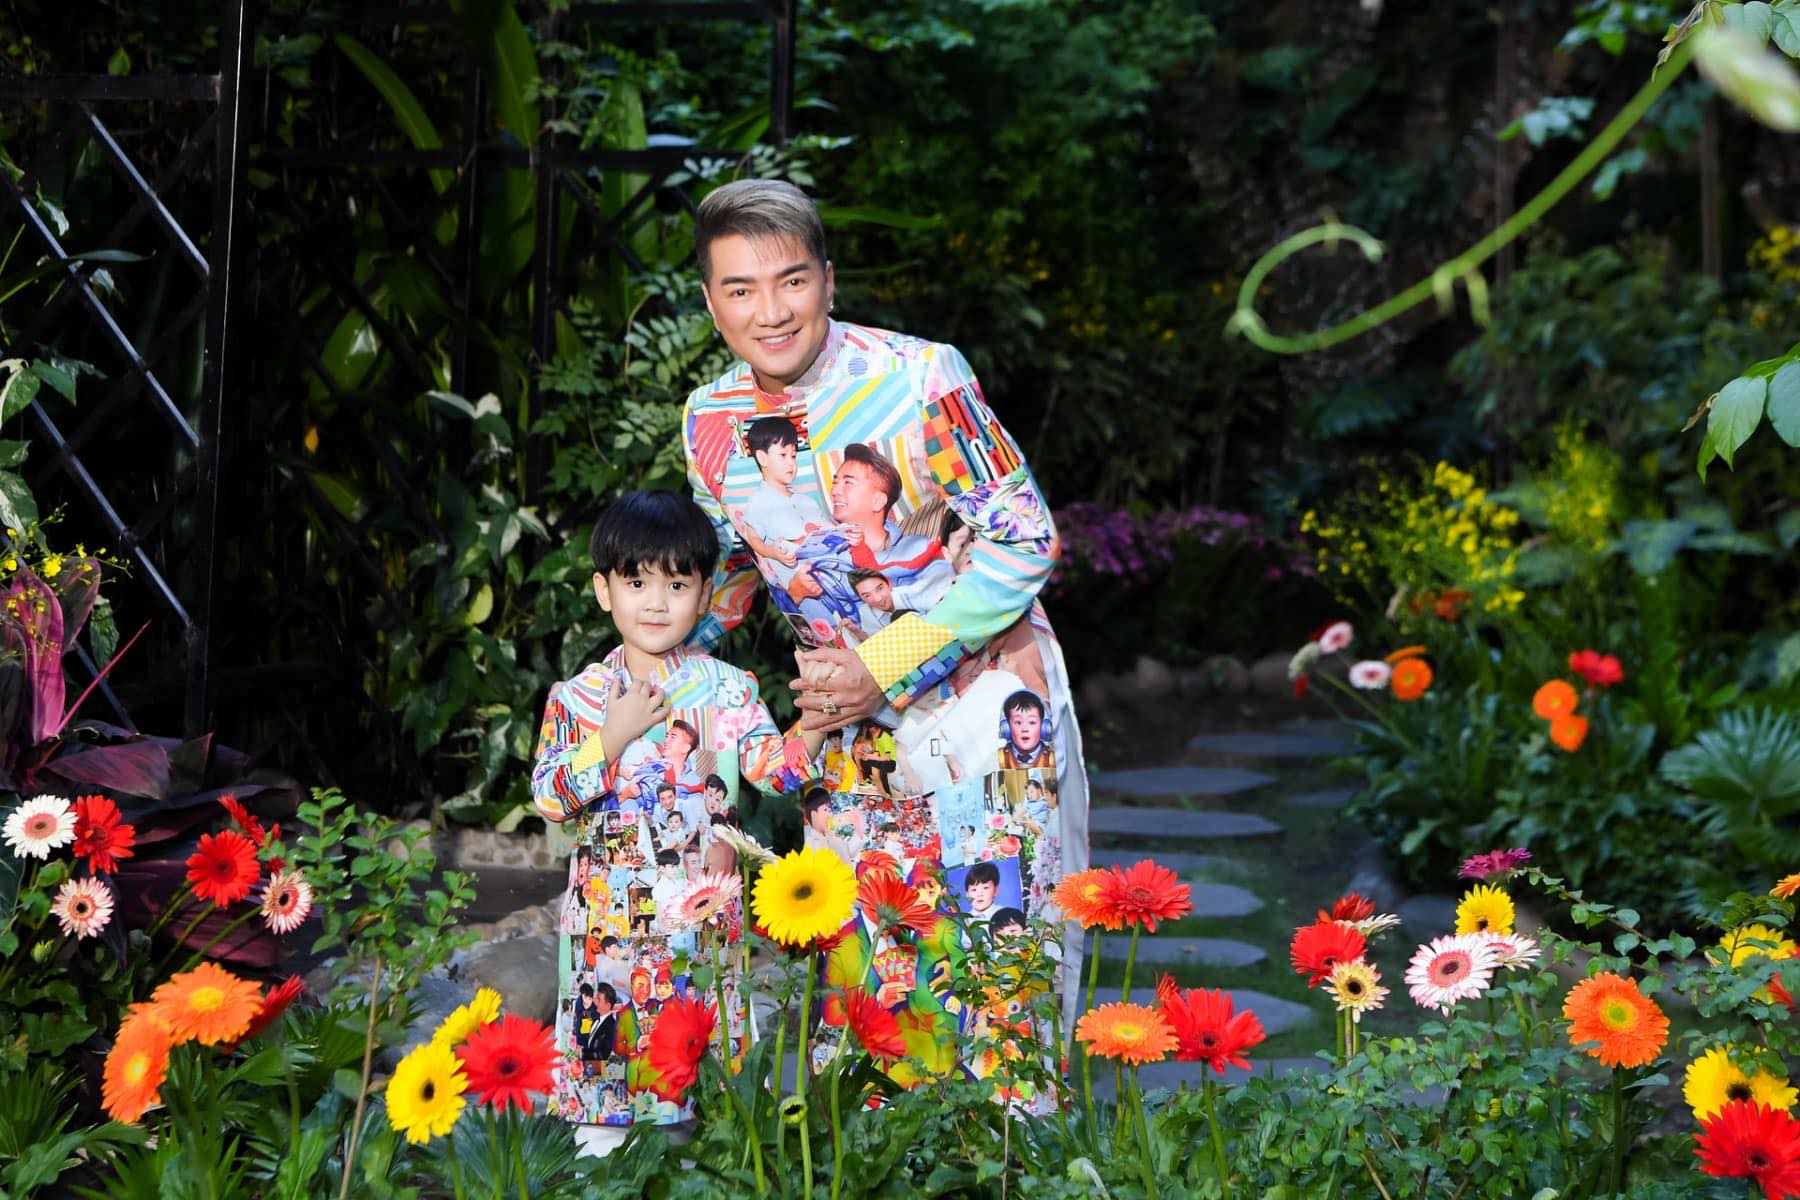 Ca sĩ Đàm Vĩnh Hưng và con trai - bé Polo Huỳnh (3 tuổi) chụp ảnh ngày tết trong không gian được trang trí hoa đầy màu sắc tươi vui, rực rỡ. 